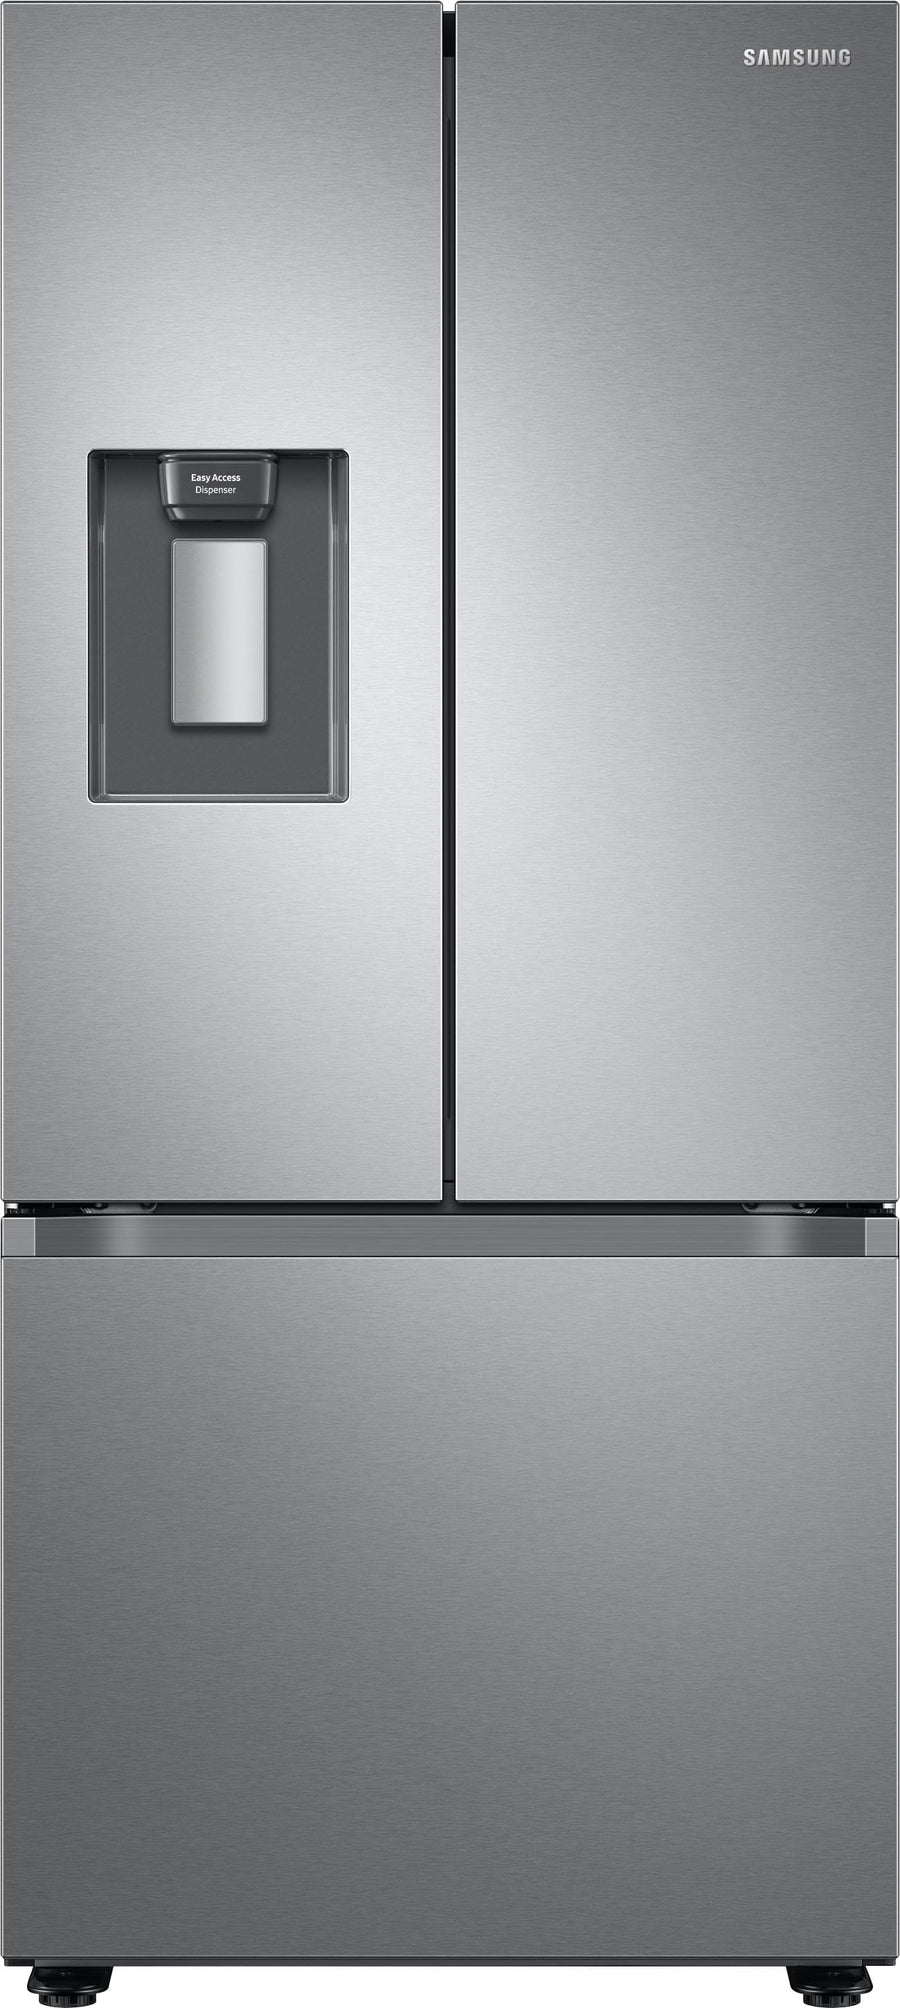 Samsung - 22 cu. ft. Smart 3-Door French Door Refrigerator with External Water Dispenser - Stainless steel_0